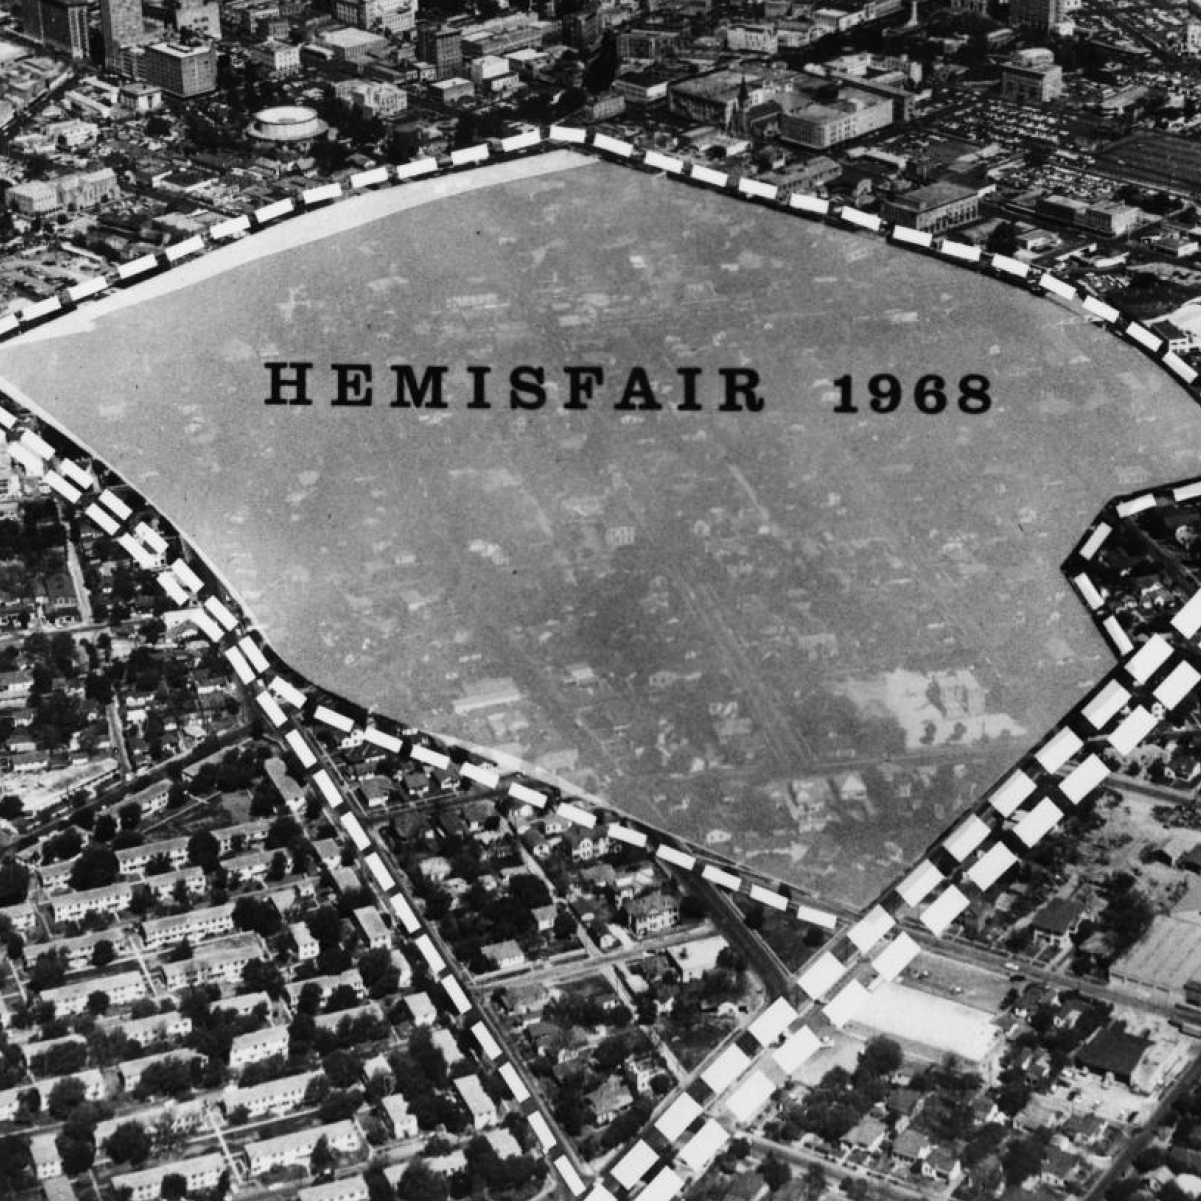 Overlay of 1968 Hemisfair